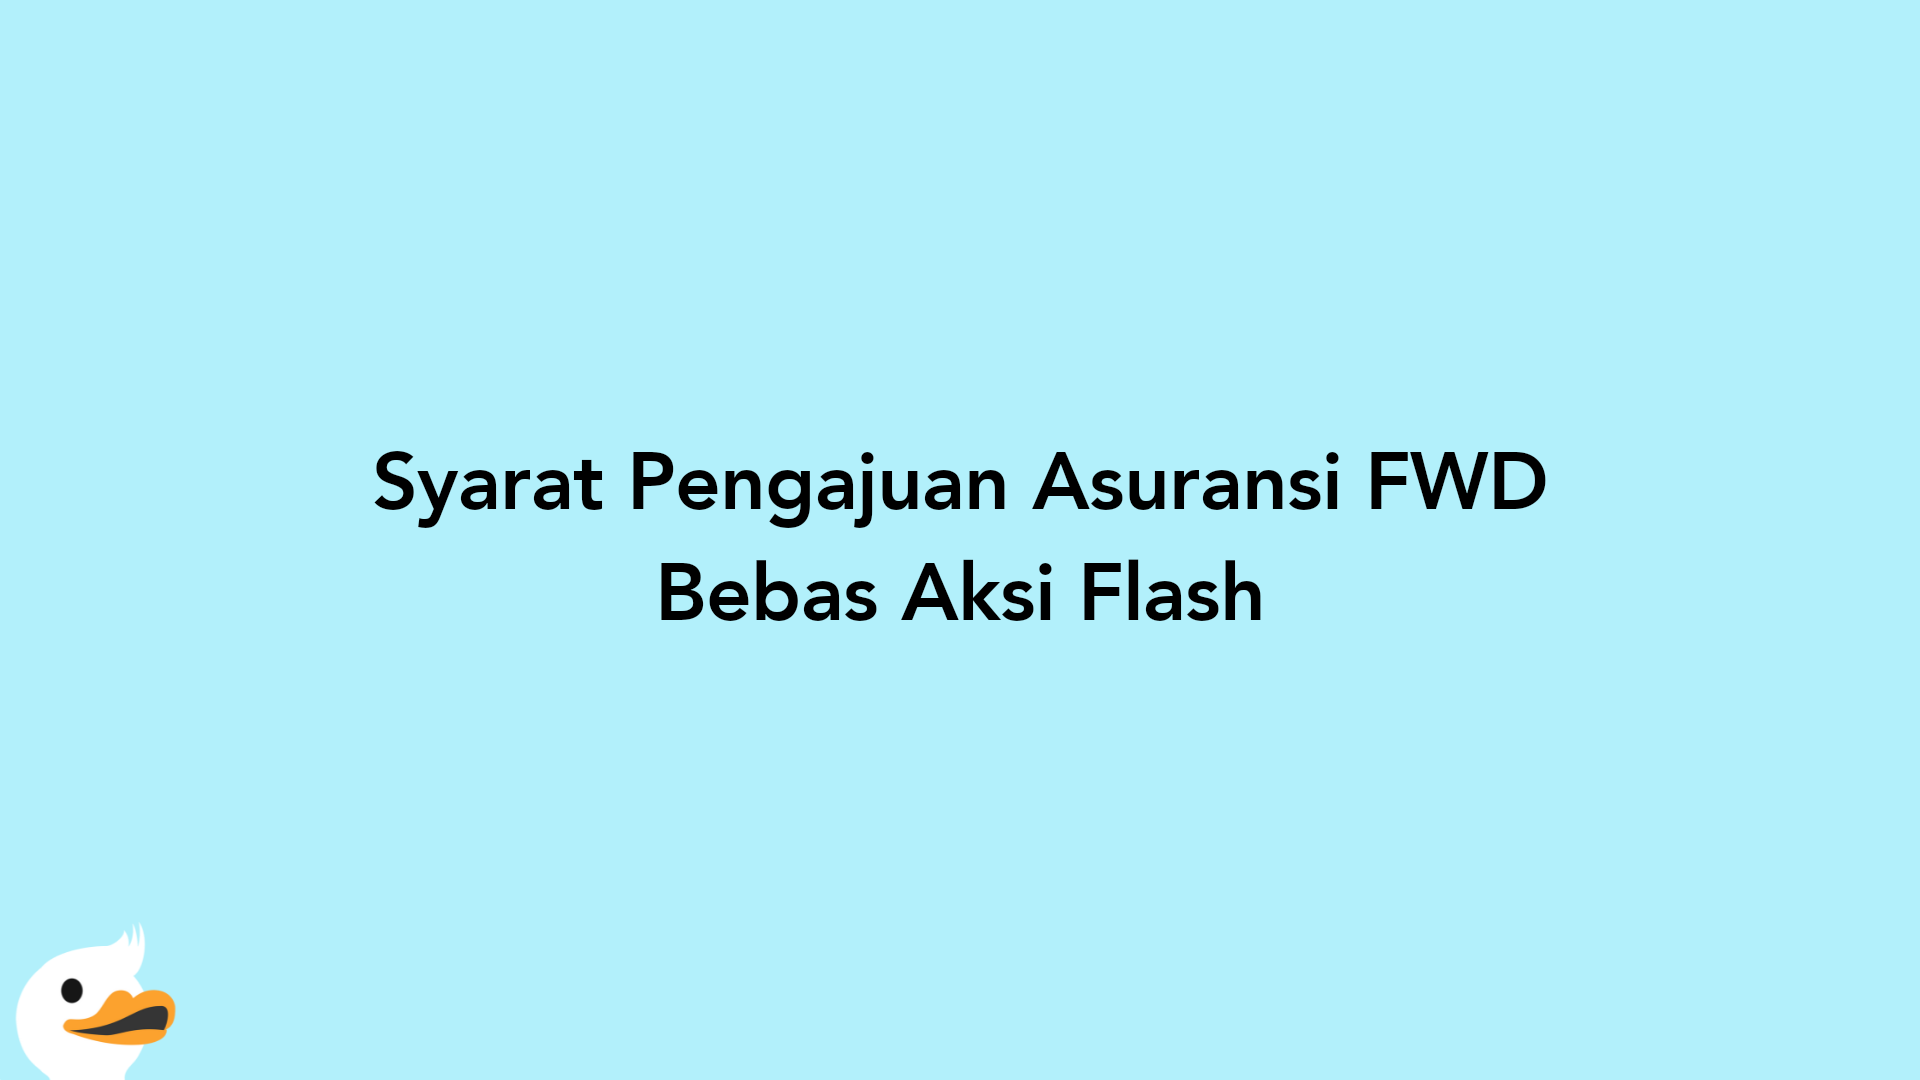 Syarat Pengajuan Asuransi FWD Bebas Aksi Flash